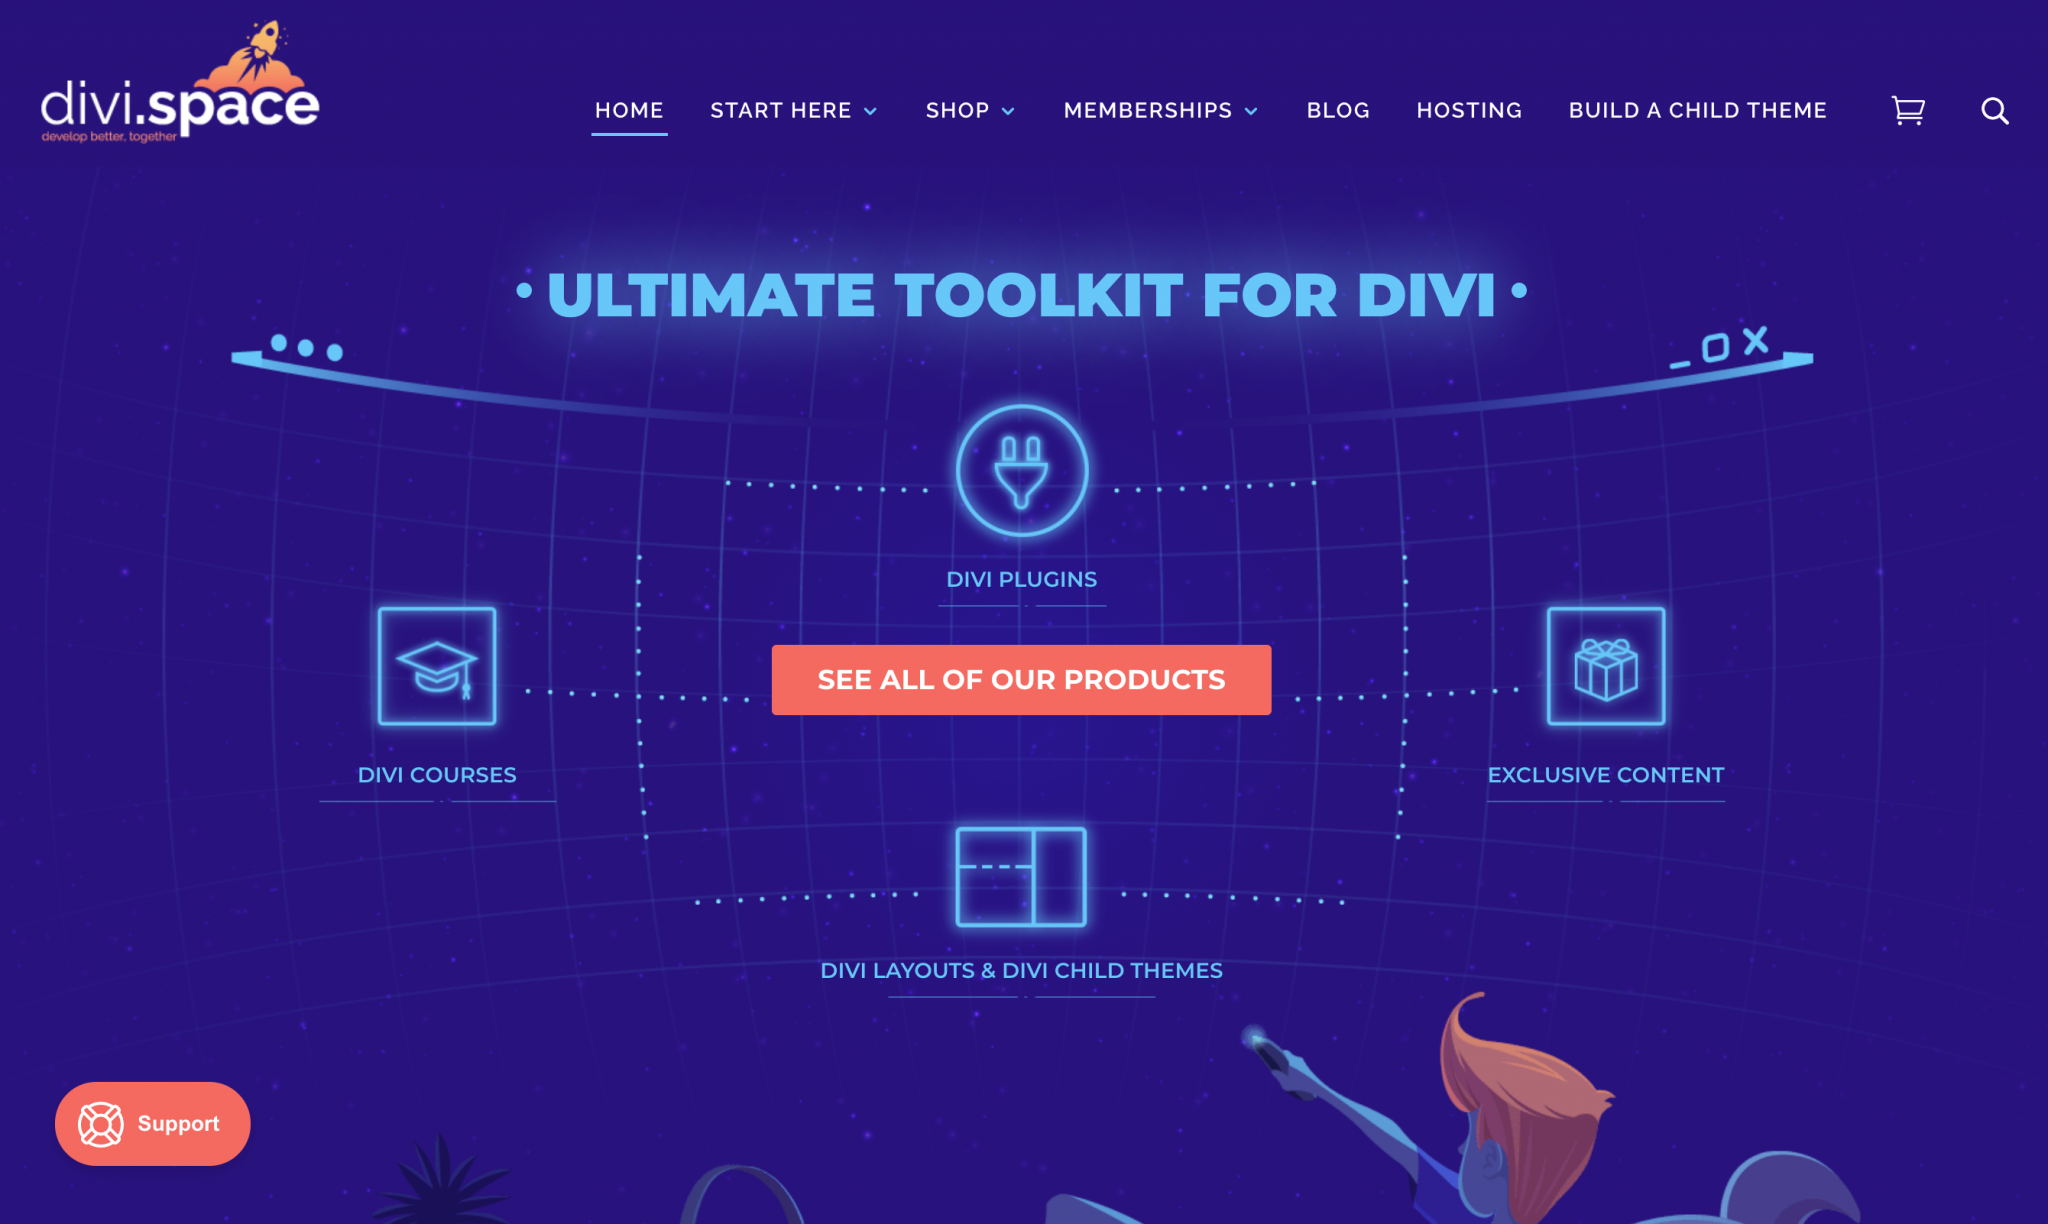 Divi Space website homepage